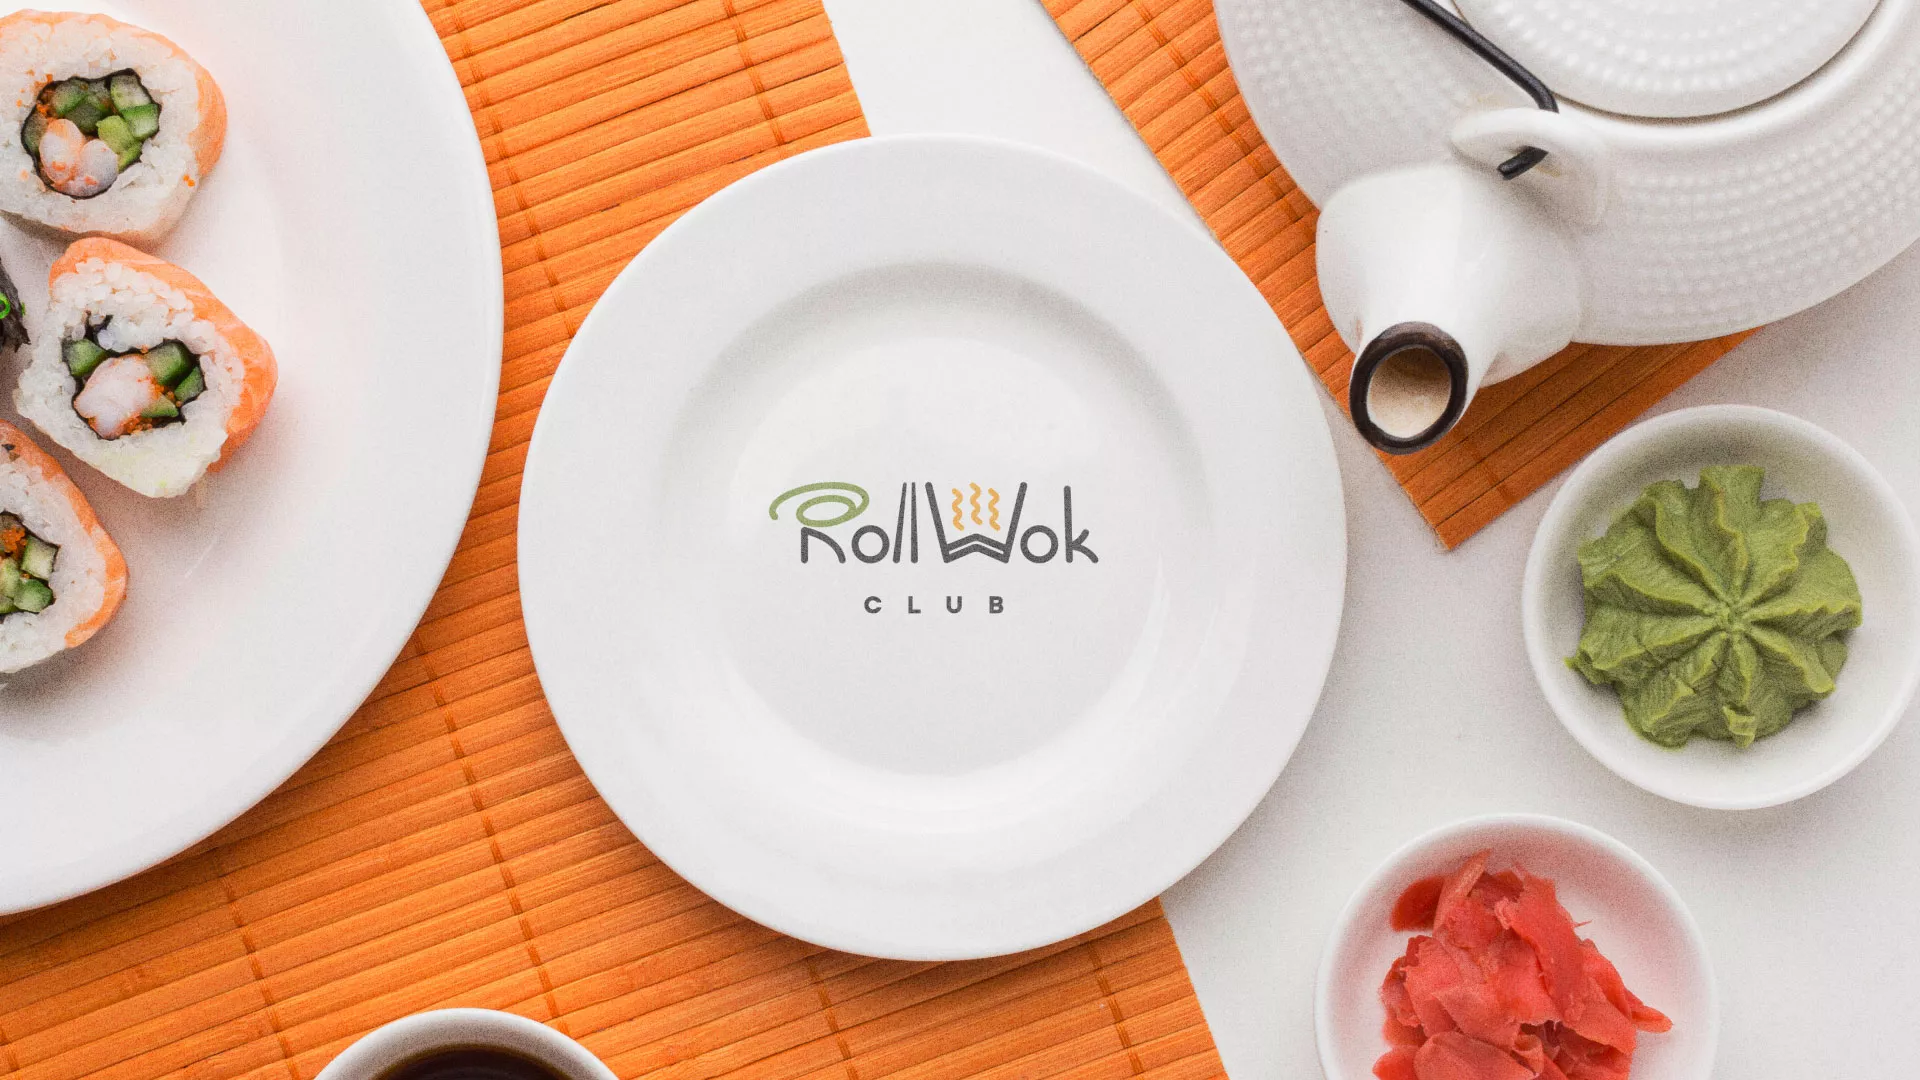 Разработка логотипа и фирменного стиля суши-бара «Roll Wok Club» в Таре